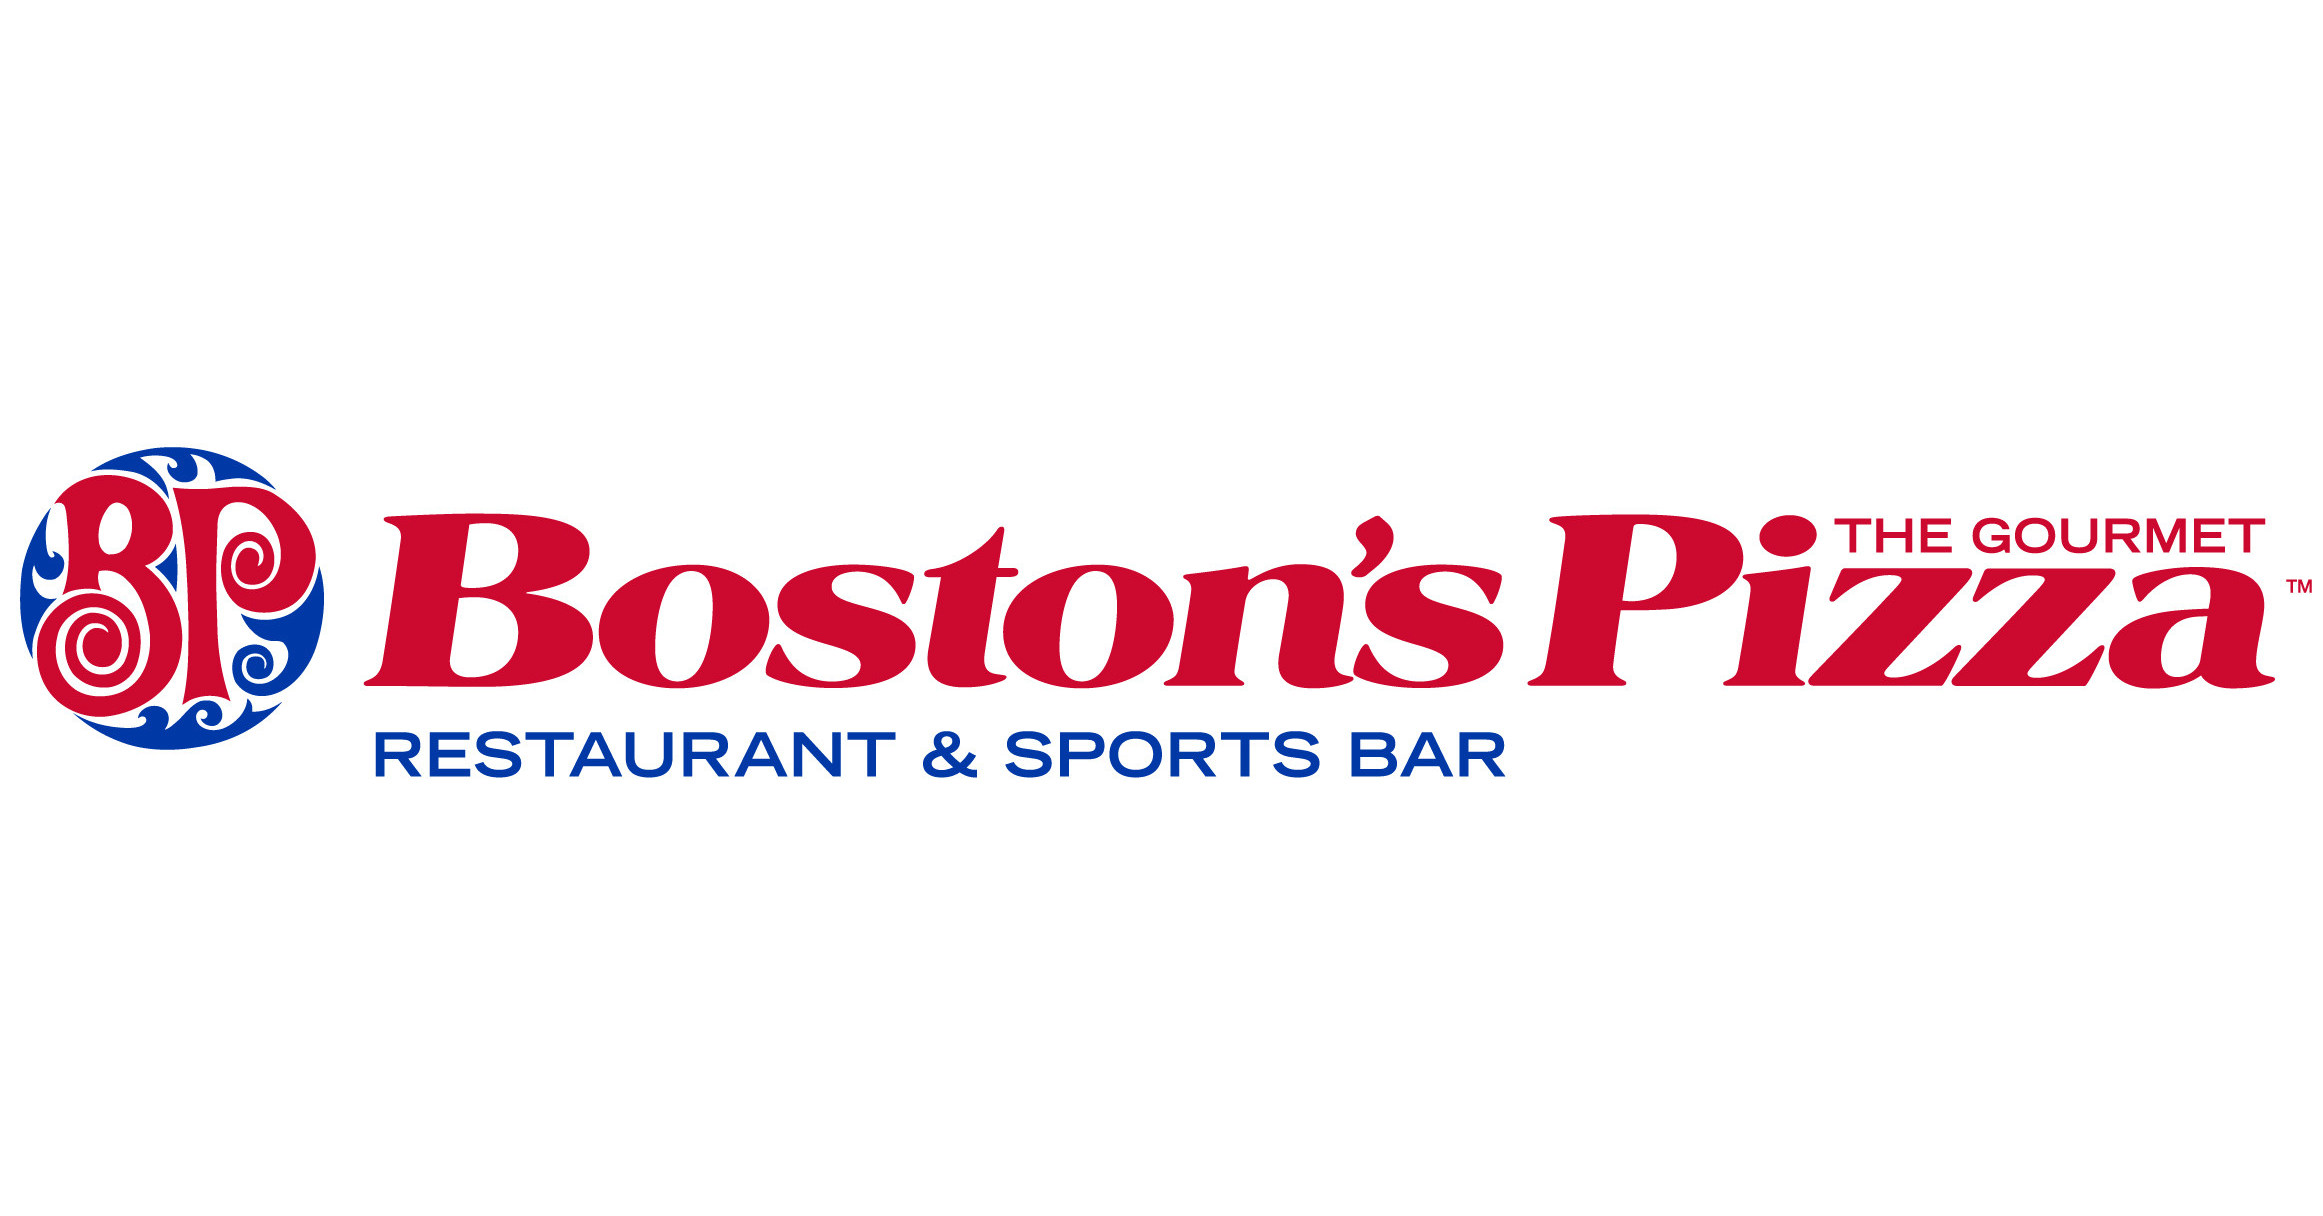 Boston's Pizza Restaurant & Sports Bar Makes Happy Hour ...